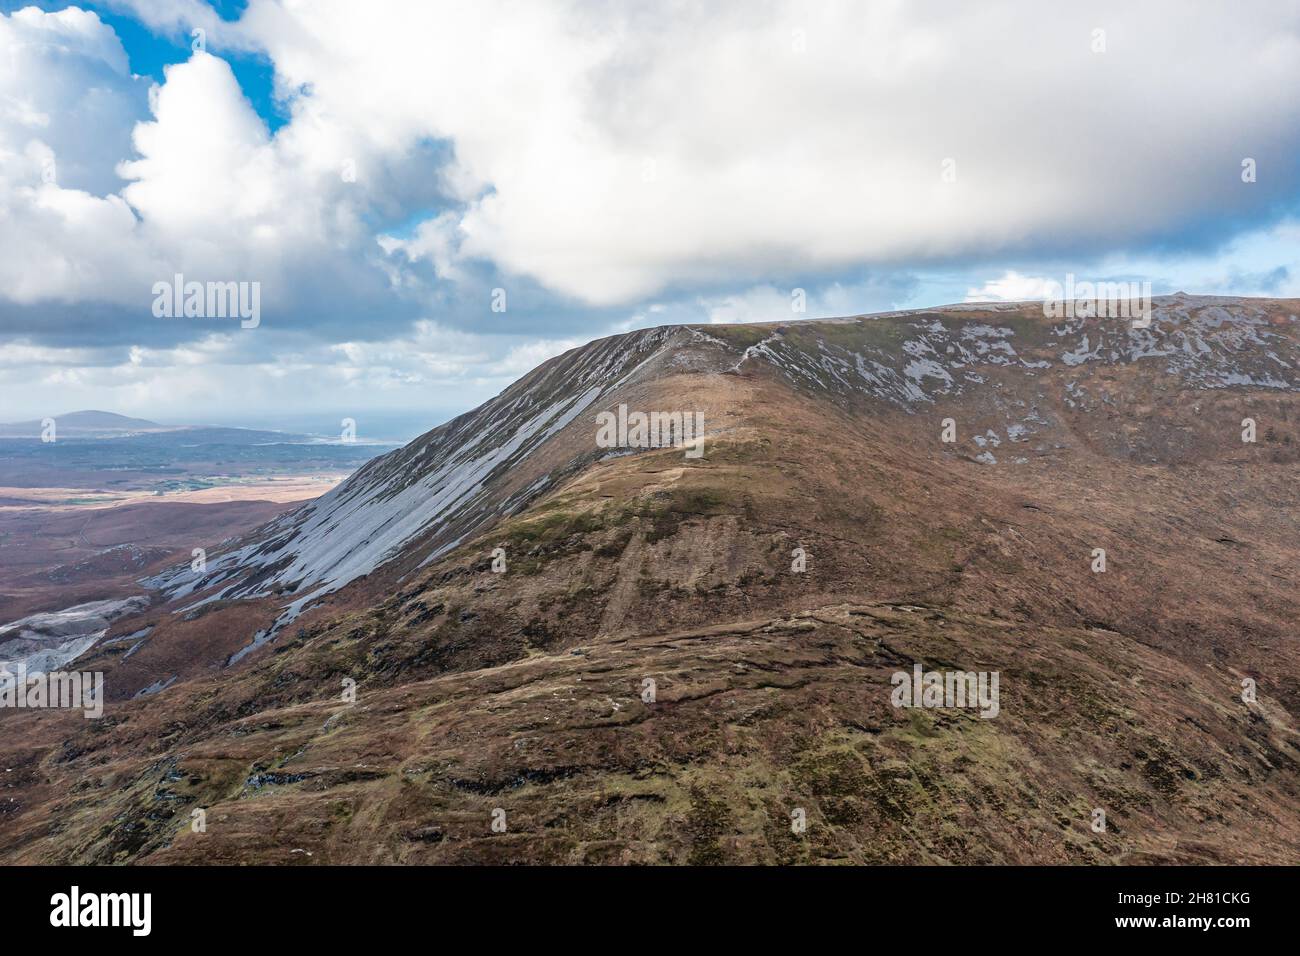 Vue aérienne de la montagne Muckish dans le comté de Donegal - Irlande. Banque D'Images